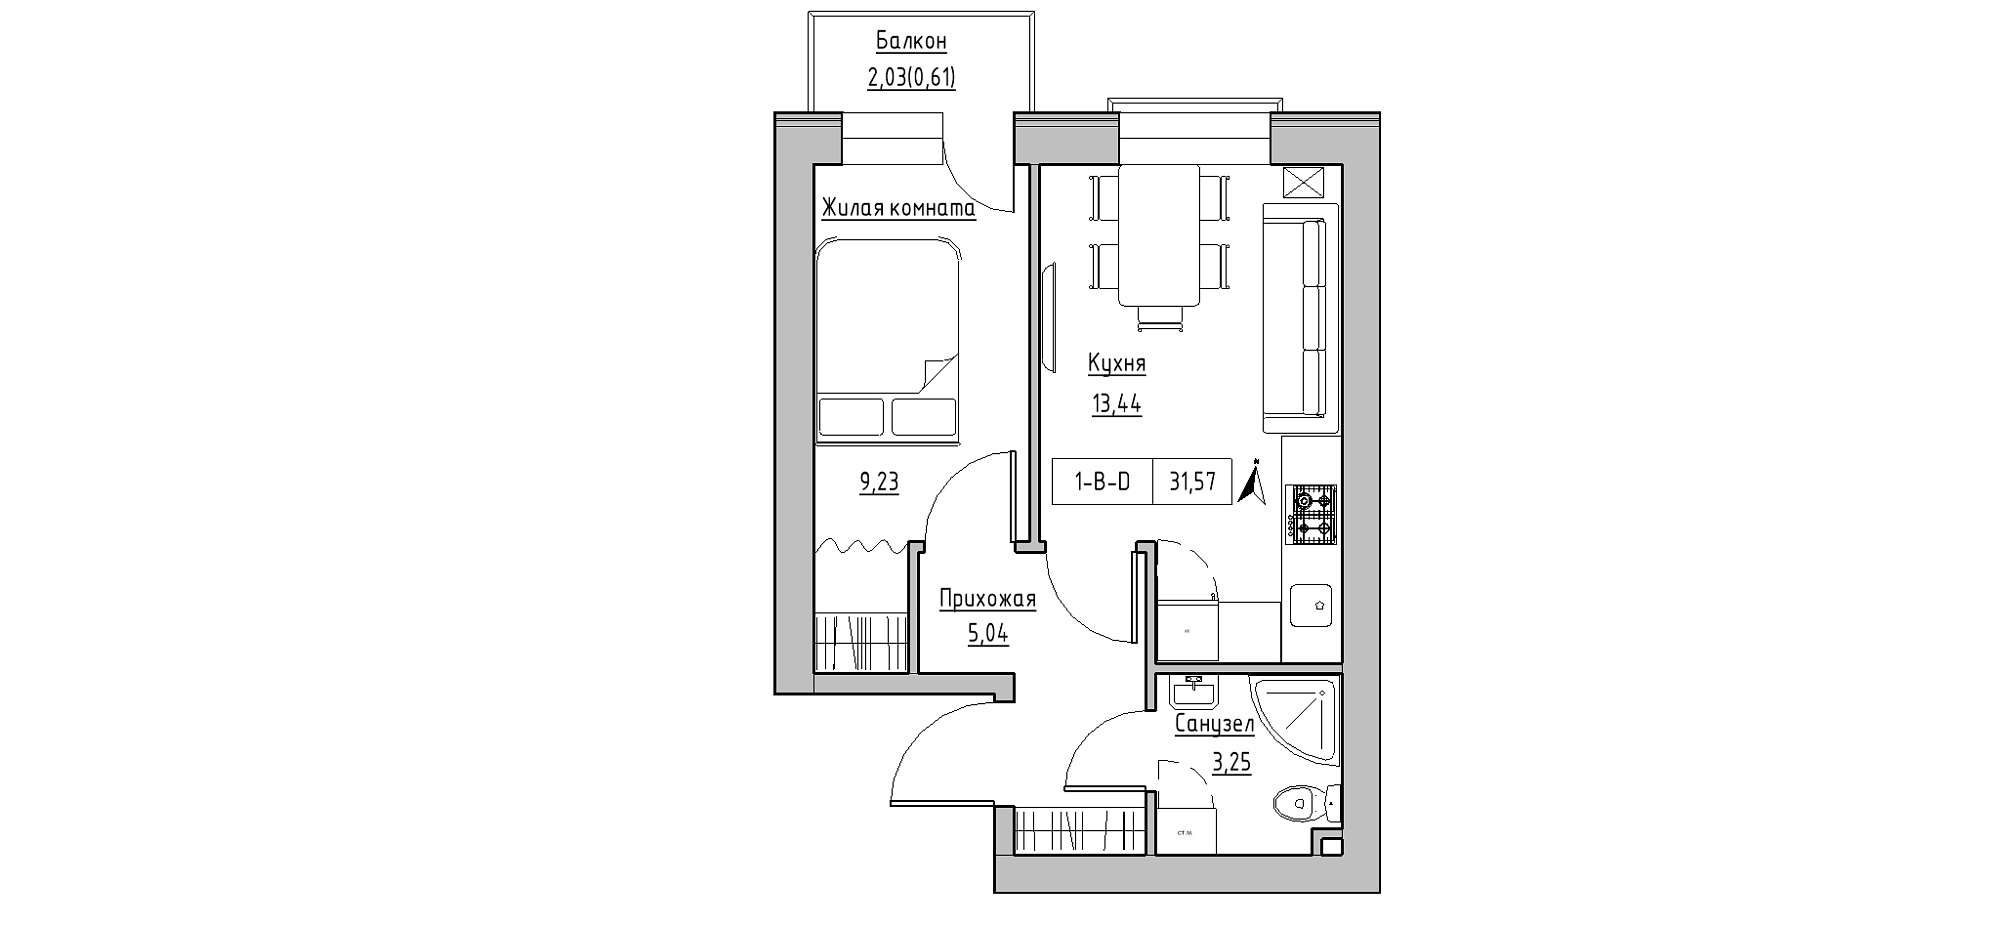 Планування 1-к квартира площею 31.57м2, KS-020-05/0003.